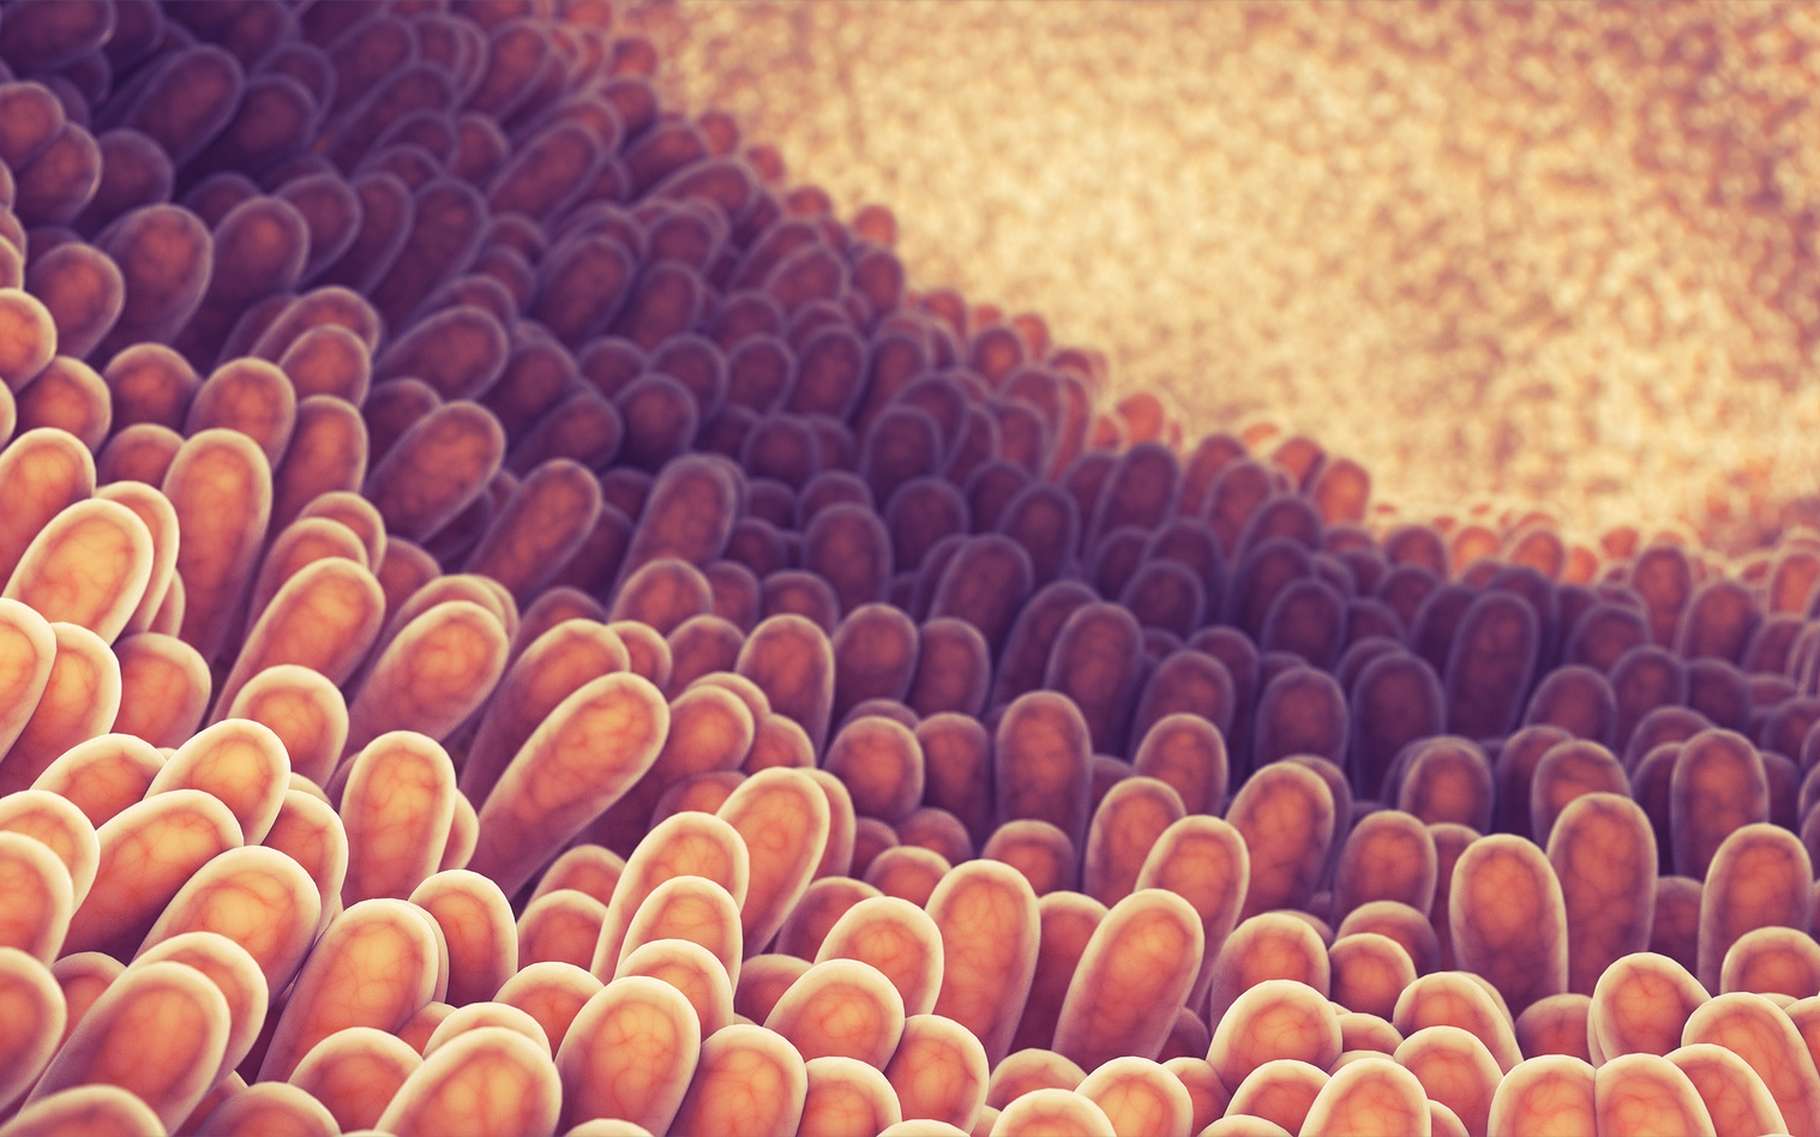 Des scientifiques ont étudié une à une les milliers de cellules différentes qui constituent l'épithélium intestinal. © nobeatssofierce, Shutterstock